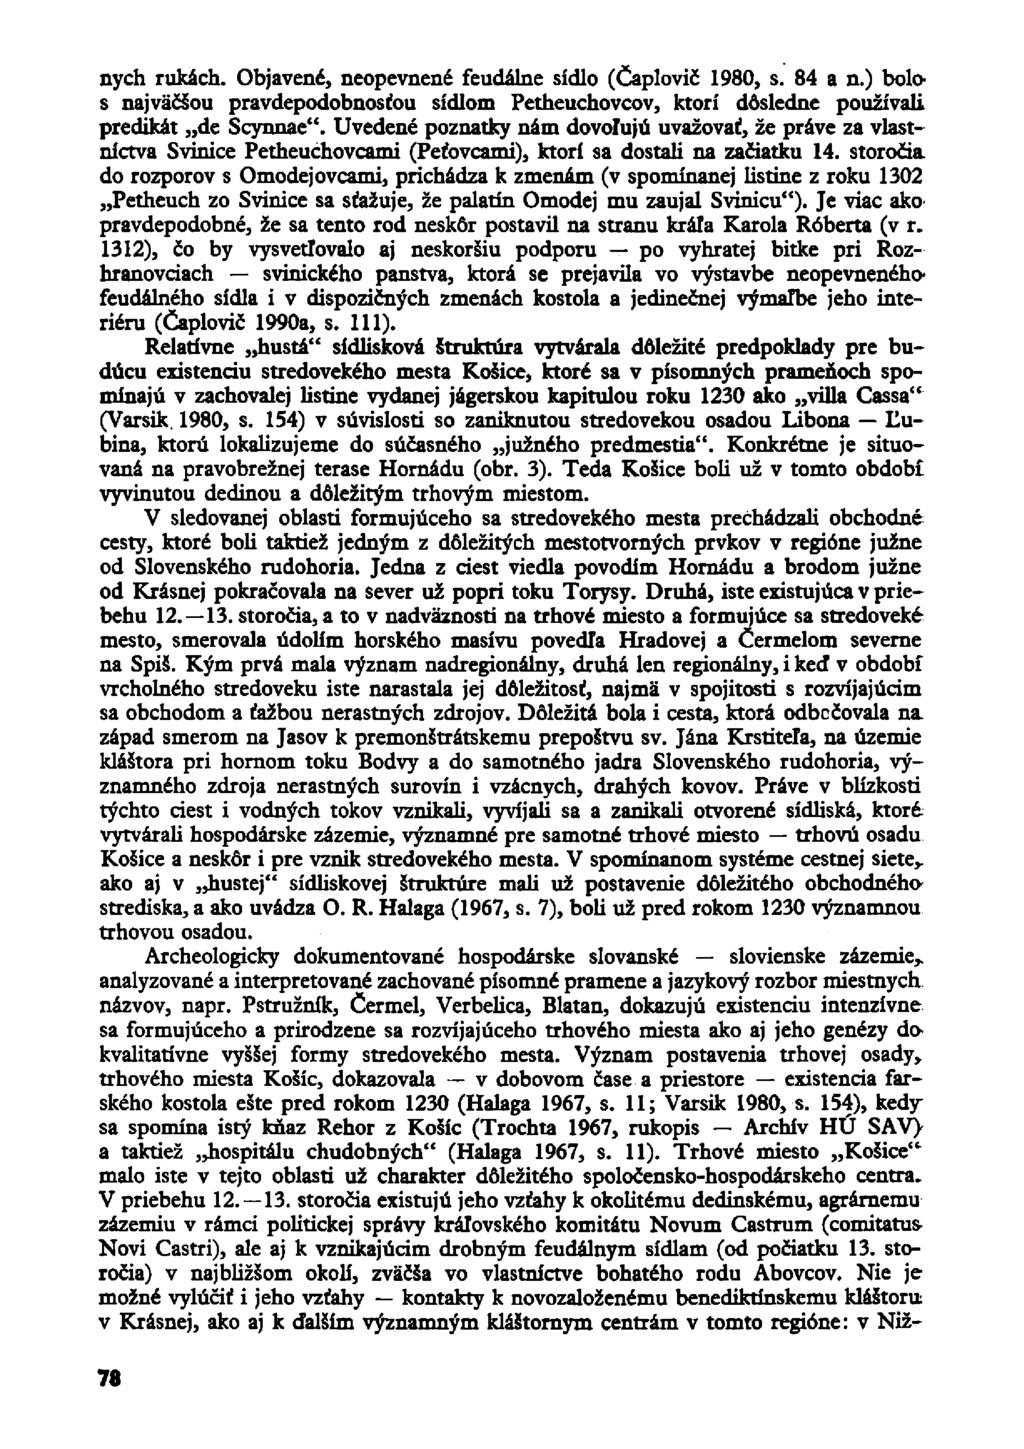 nych rukäch. Objavend, neopevnene" feudalne sidlo (Caplovic" 1980, s. 84 a n.) bolo s najväösou pravdepodobnosfou sidlom Petheuchovcov, ktori dösledne pouzivali predikat de Scynnae".